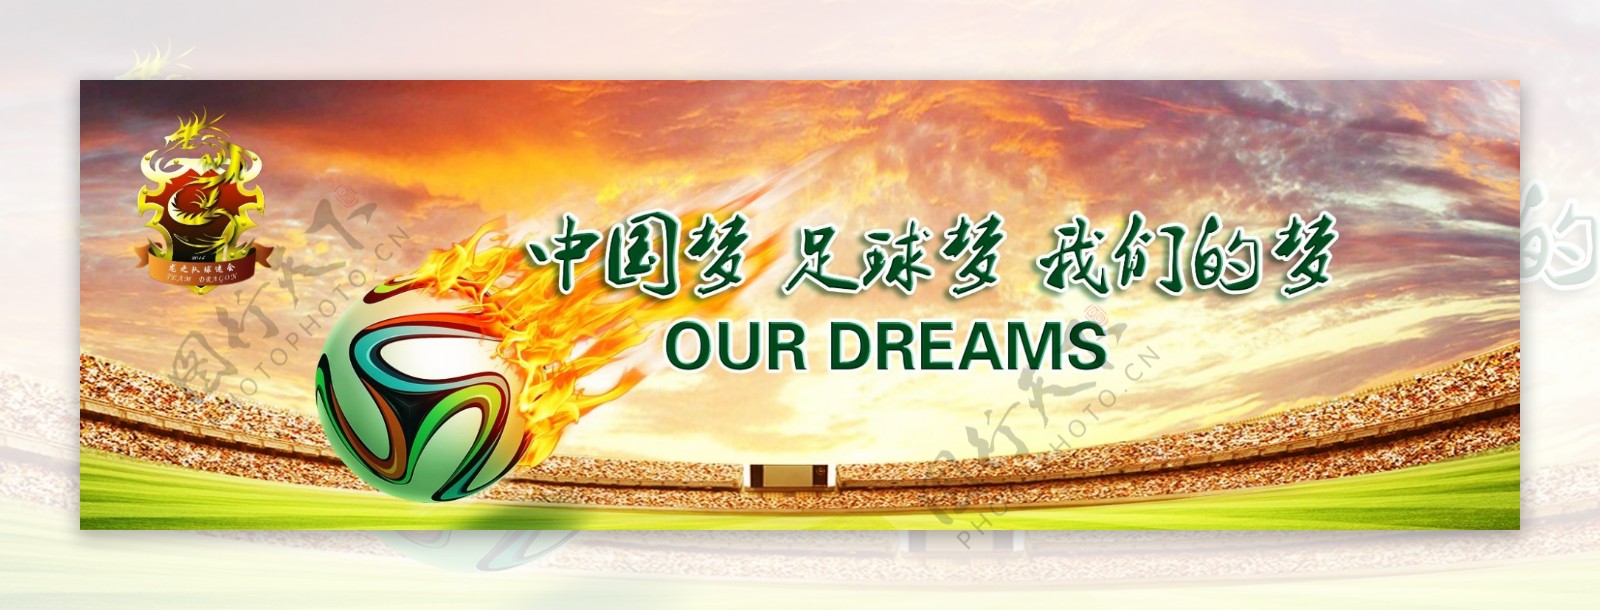 中国梦足球梦我们的梦图片